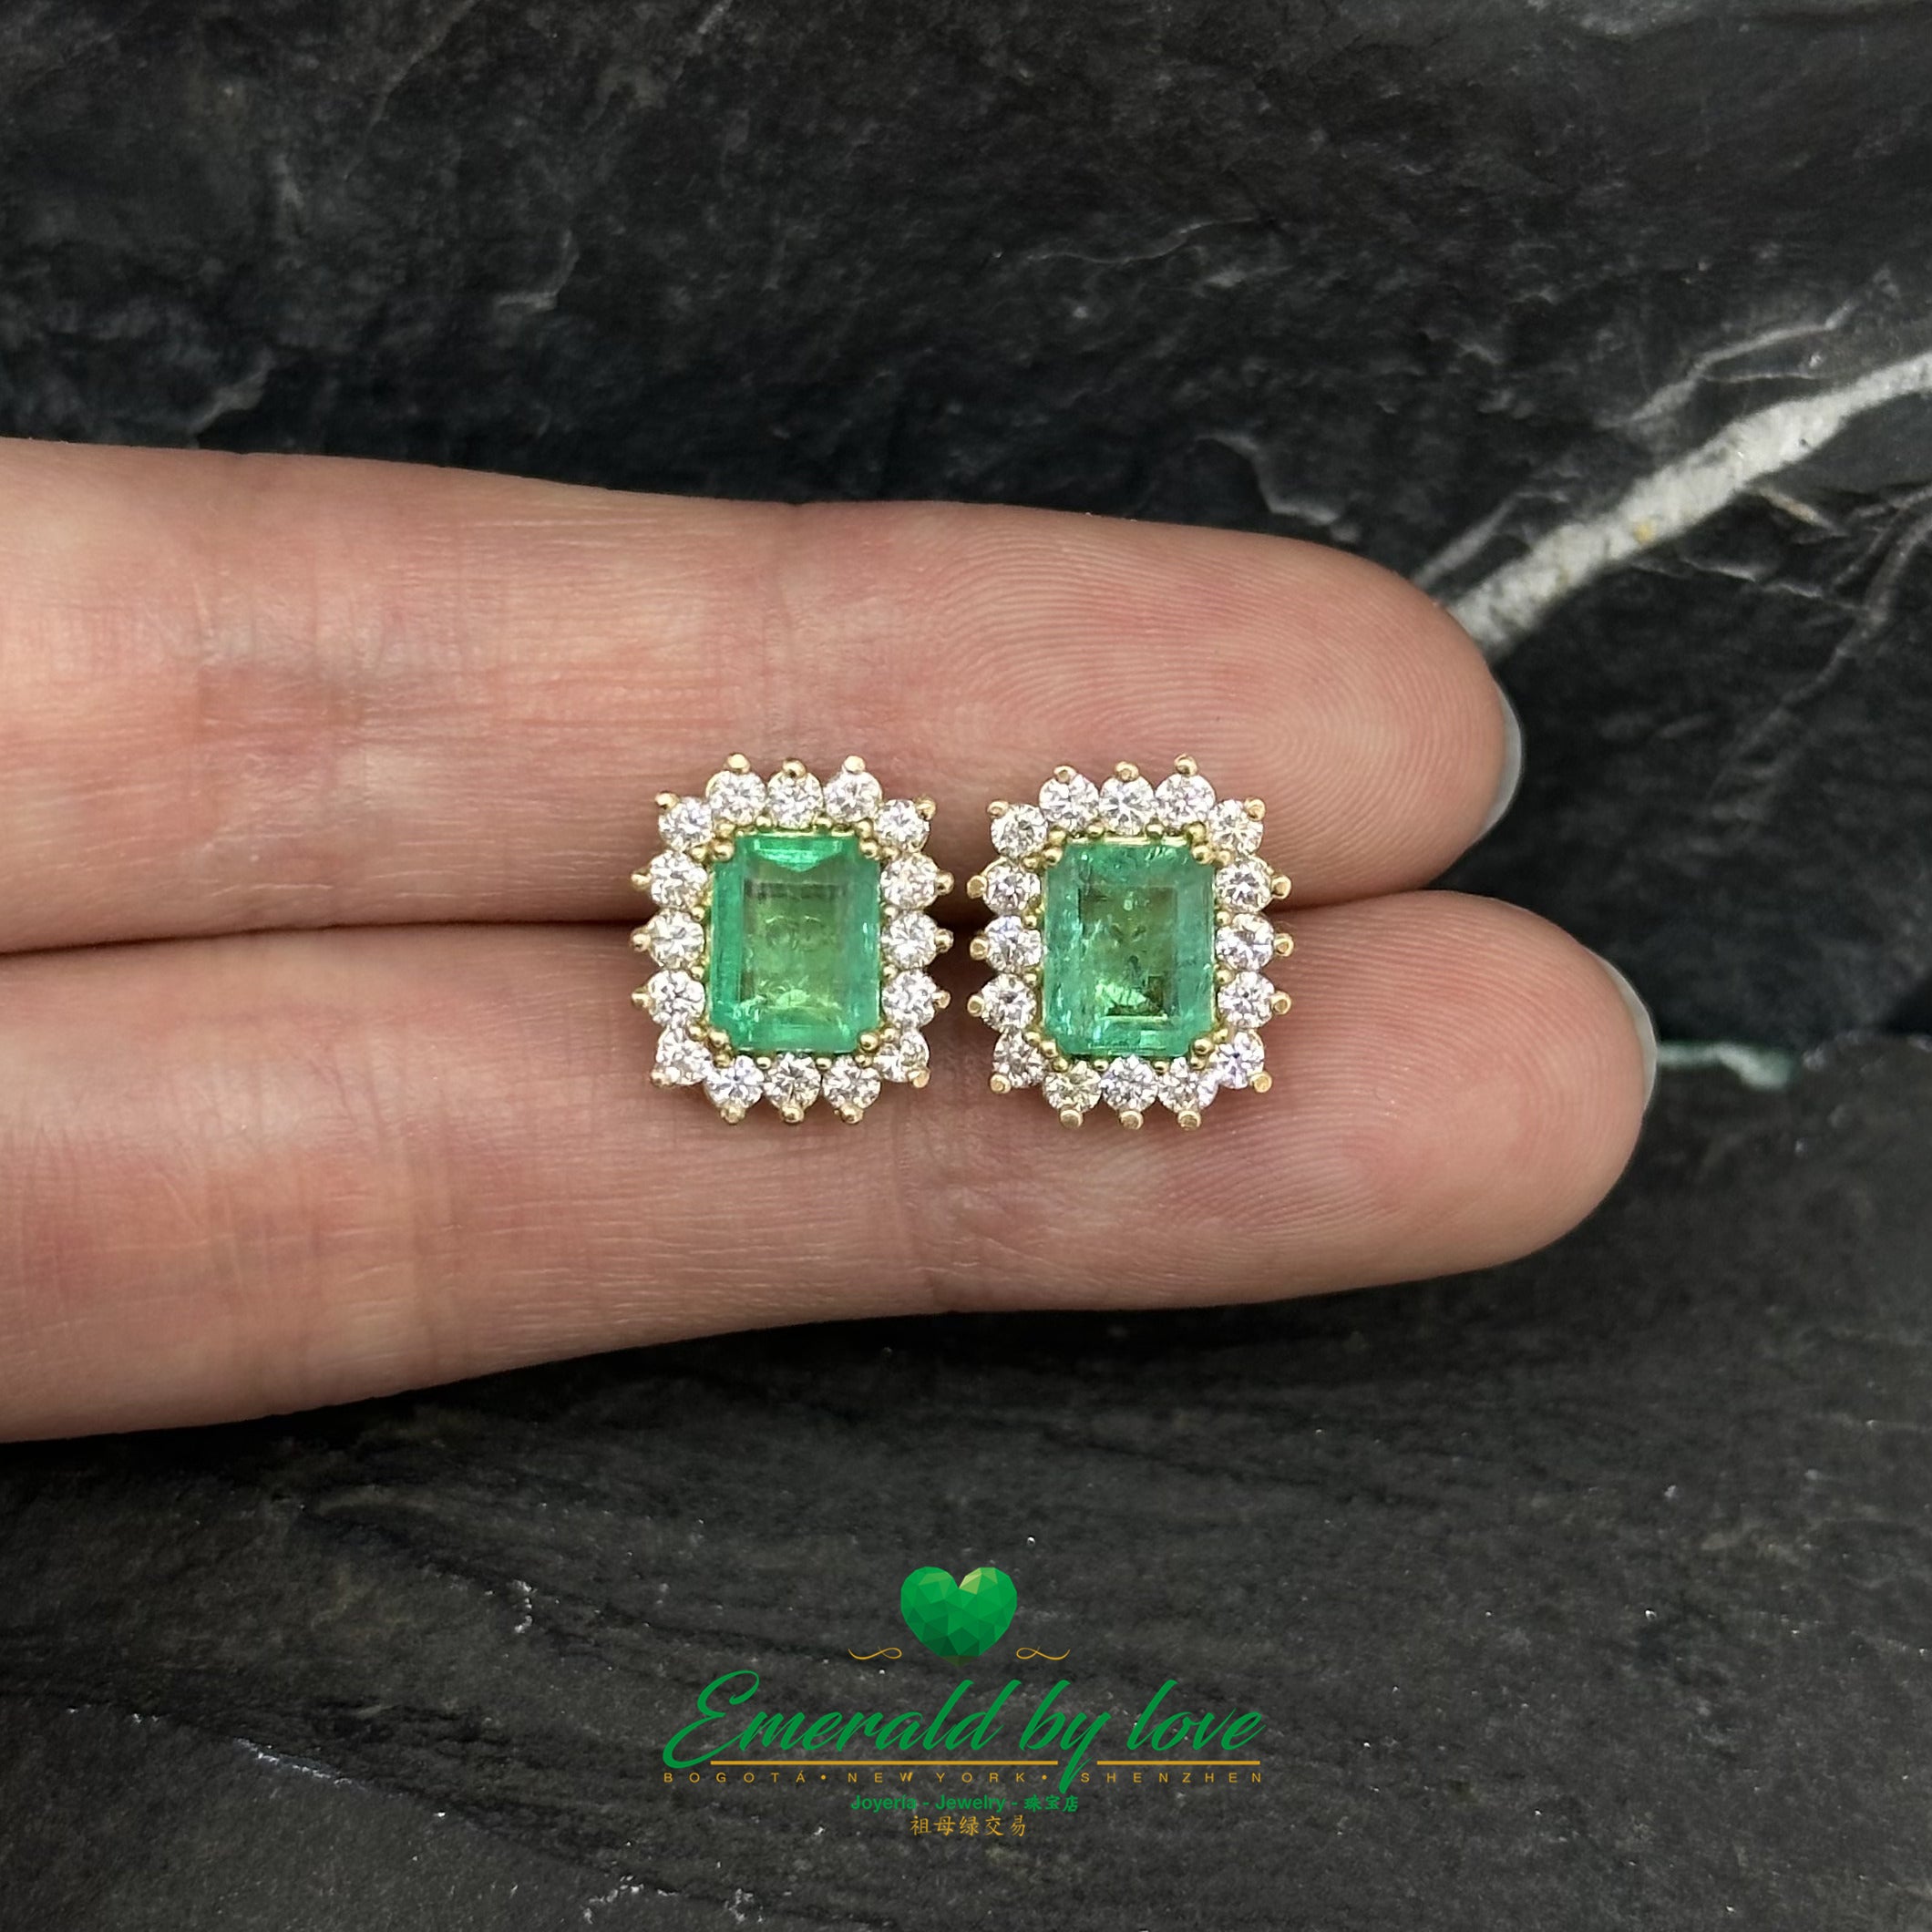 Boucles d’oreilles émeraude colombienne et diamants taille marquise : cristaux rectangulaires exquis